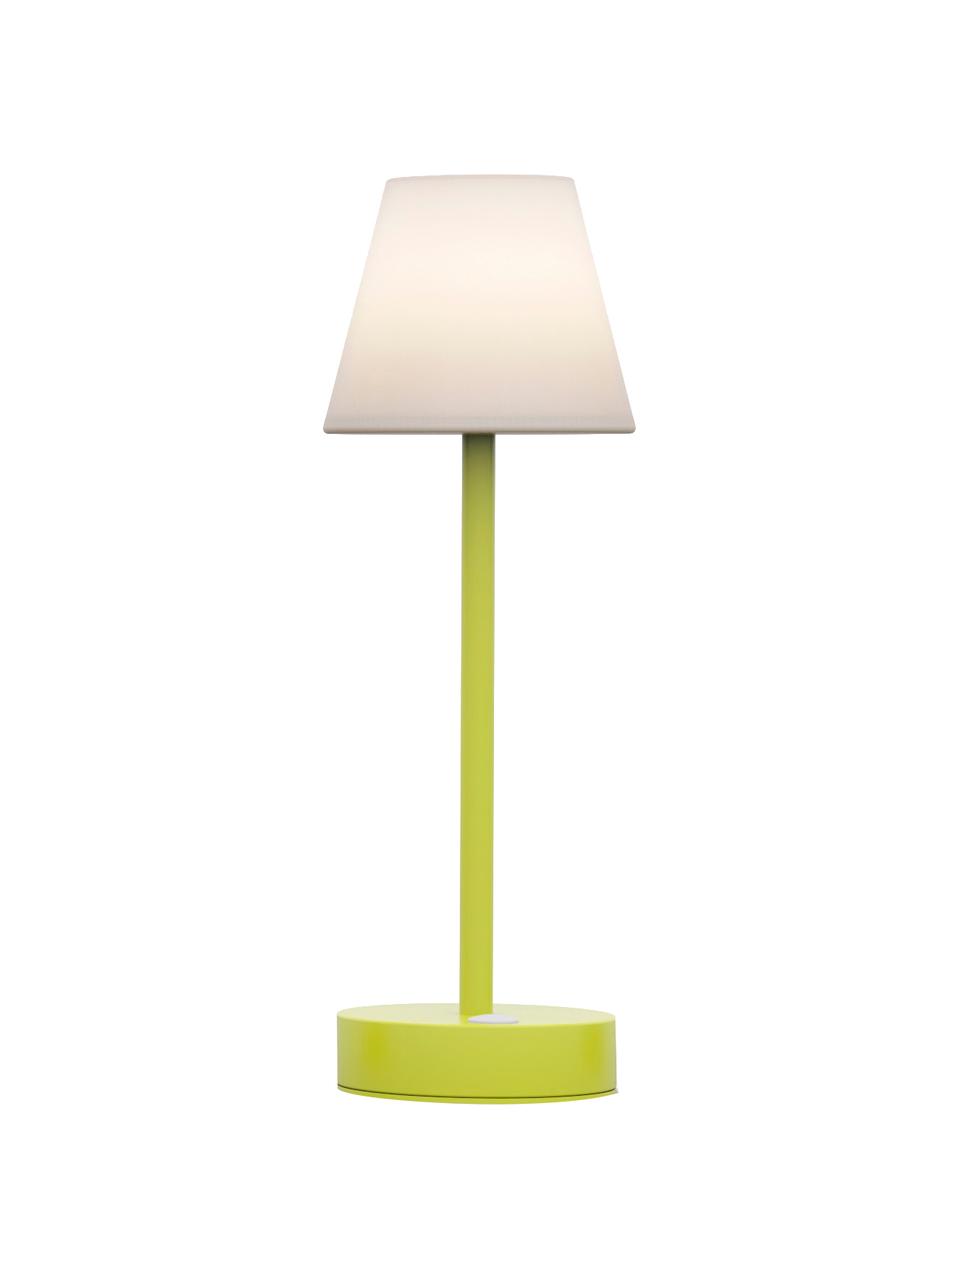 Mobilna lampa zewnętrzna LED z funkcją przyciemniania Lola, Biały, jasny zielony, Ø 11 x W 32 cm